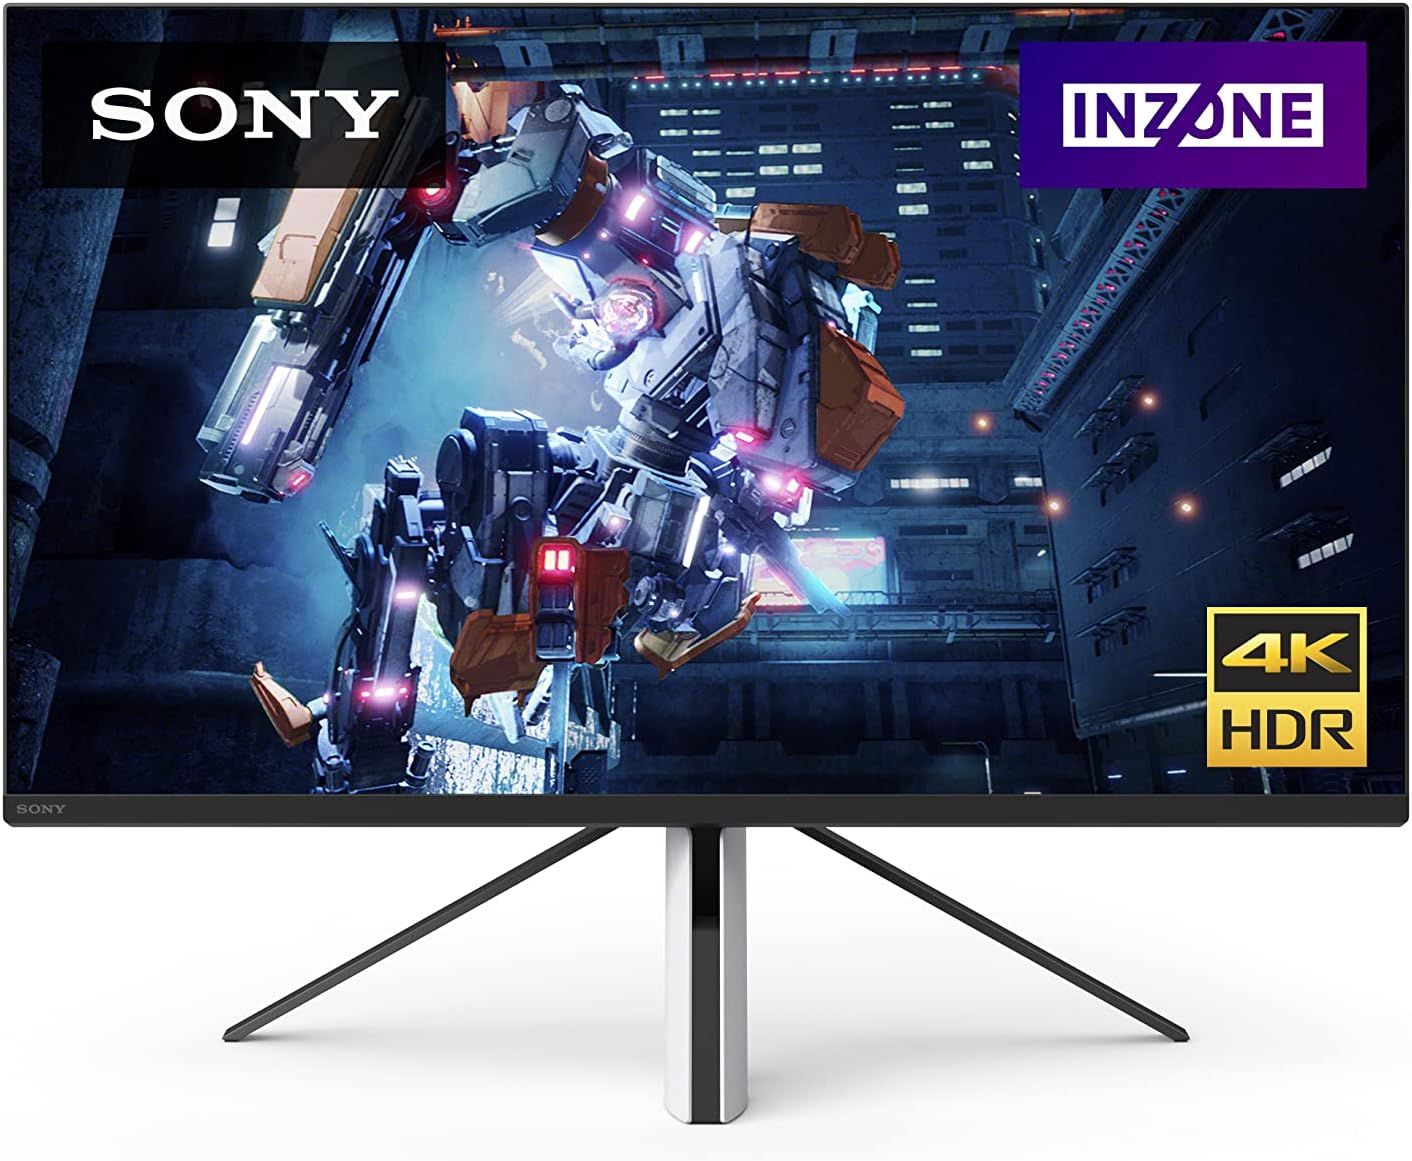 Sony INZONE M9 27” 4K 144Hz Gaming Monitor